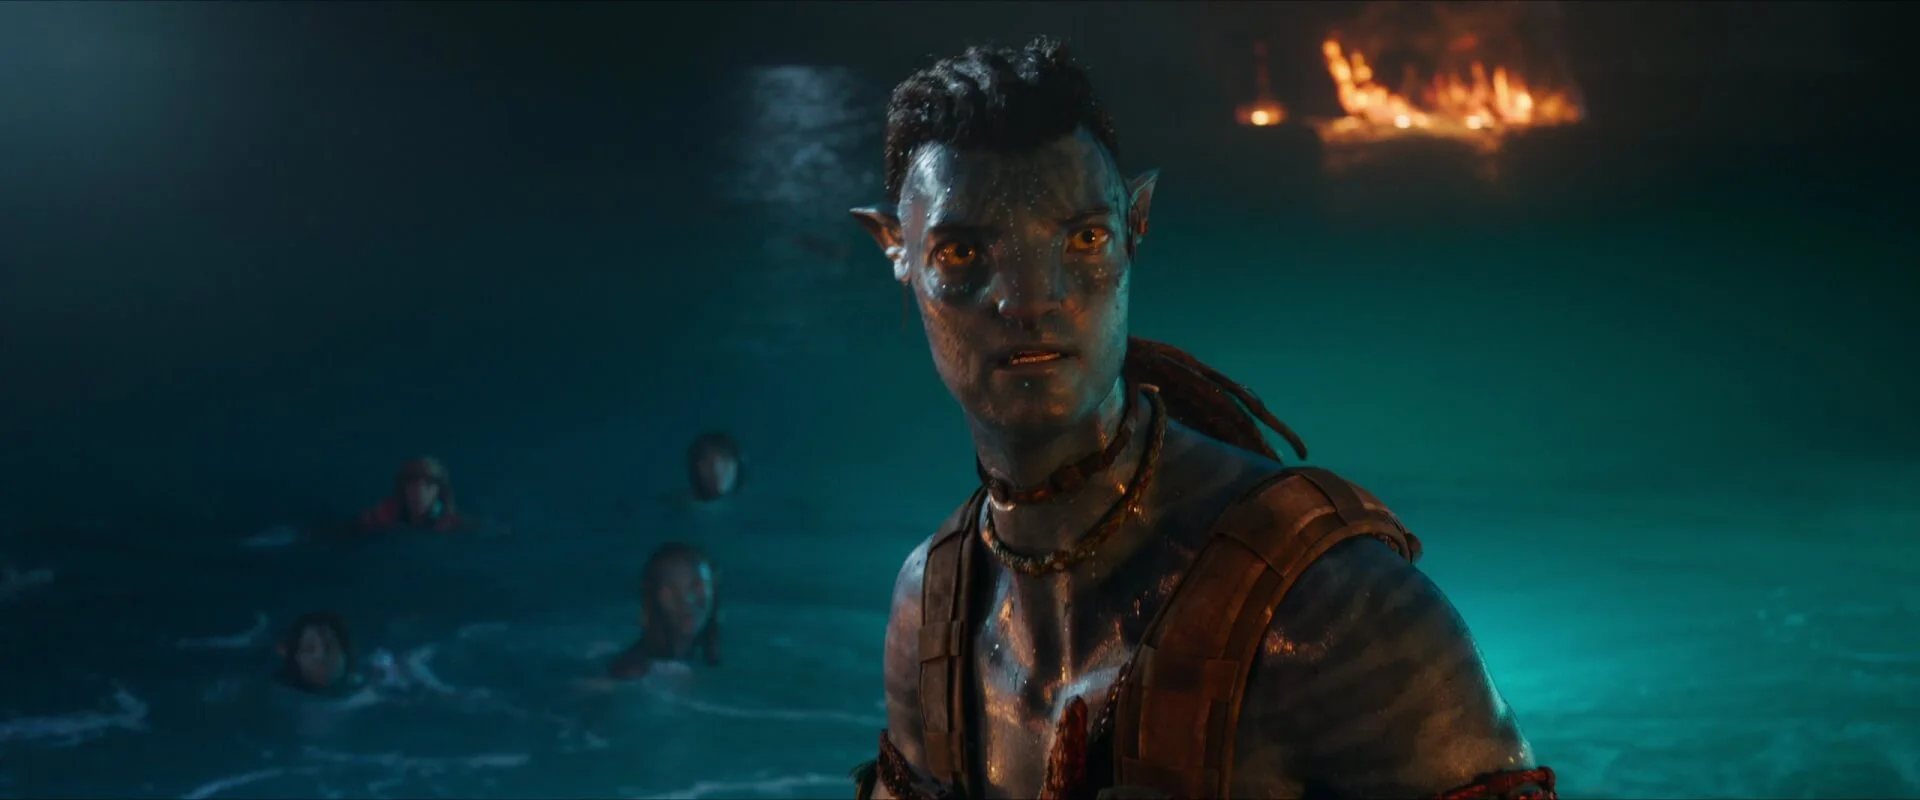 Az Avatar producere most az ellenkezőjét állítja, hogy a na’vik mégsem jönnek a Földre, mert az egész történet a Pandorán játszódik